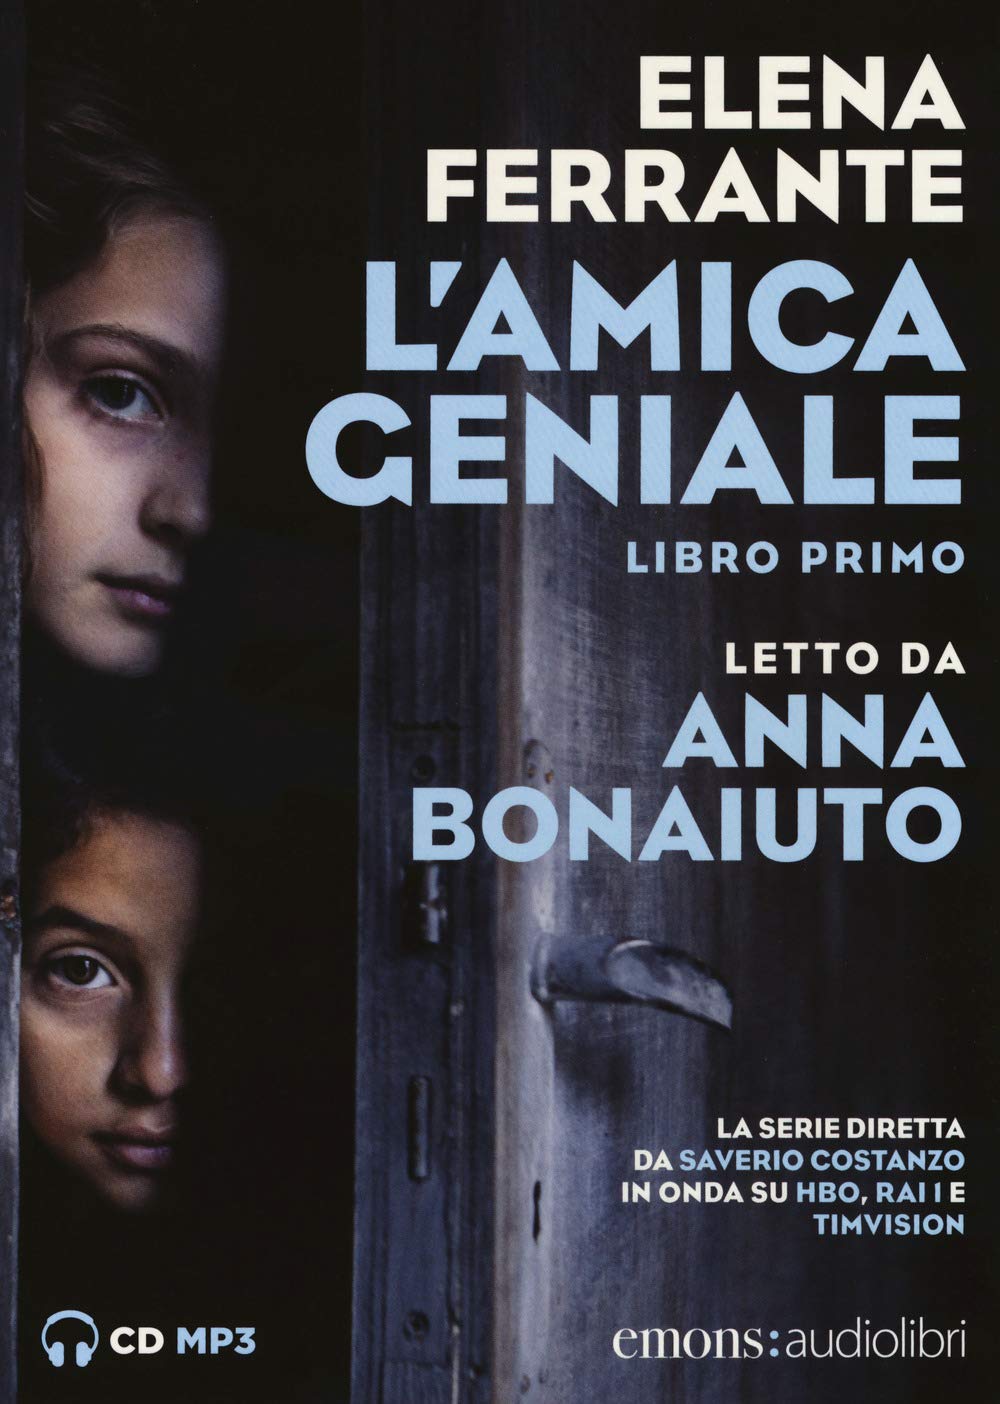 Audiolibro Elena Ferrante - L' Amica Geniale Letto Da Anna Bonaiuto. Audiolibro. CD Audio Formato MP3 Vol 01 NUOVO SIGILLATO, EDIZIONE DEL 25/10/2018 SUBITO DISPONIBILE